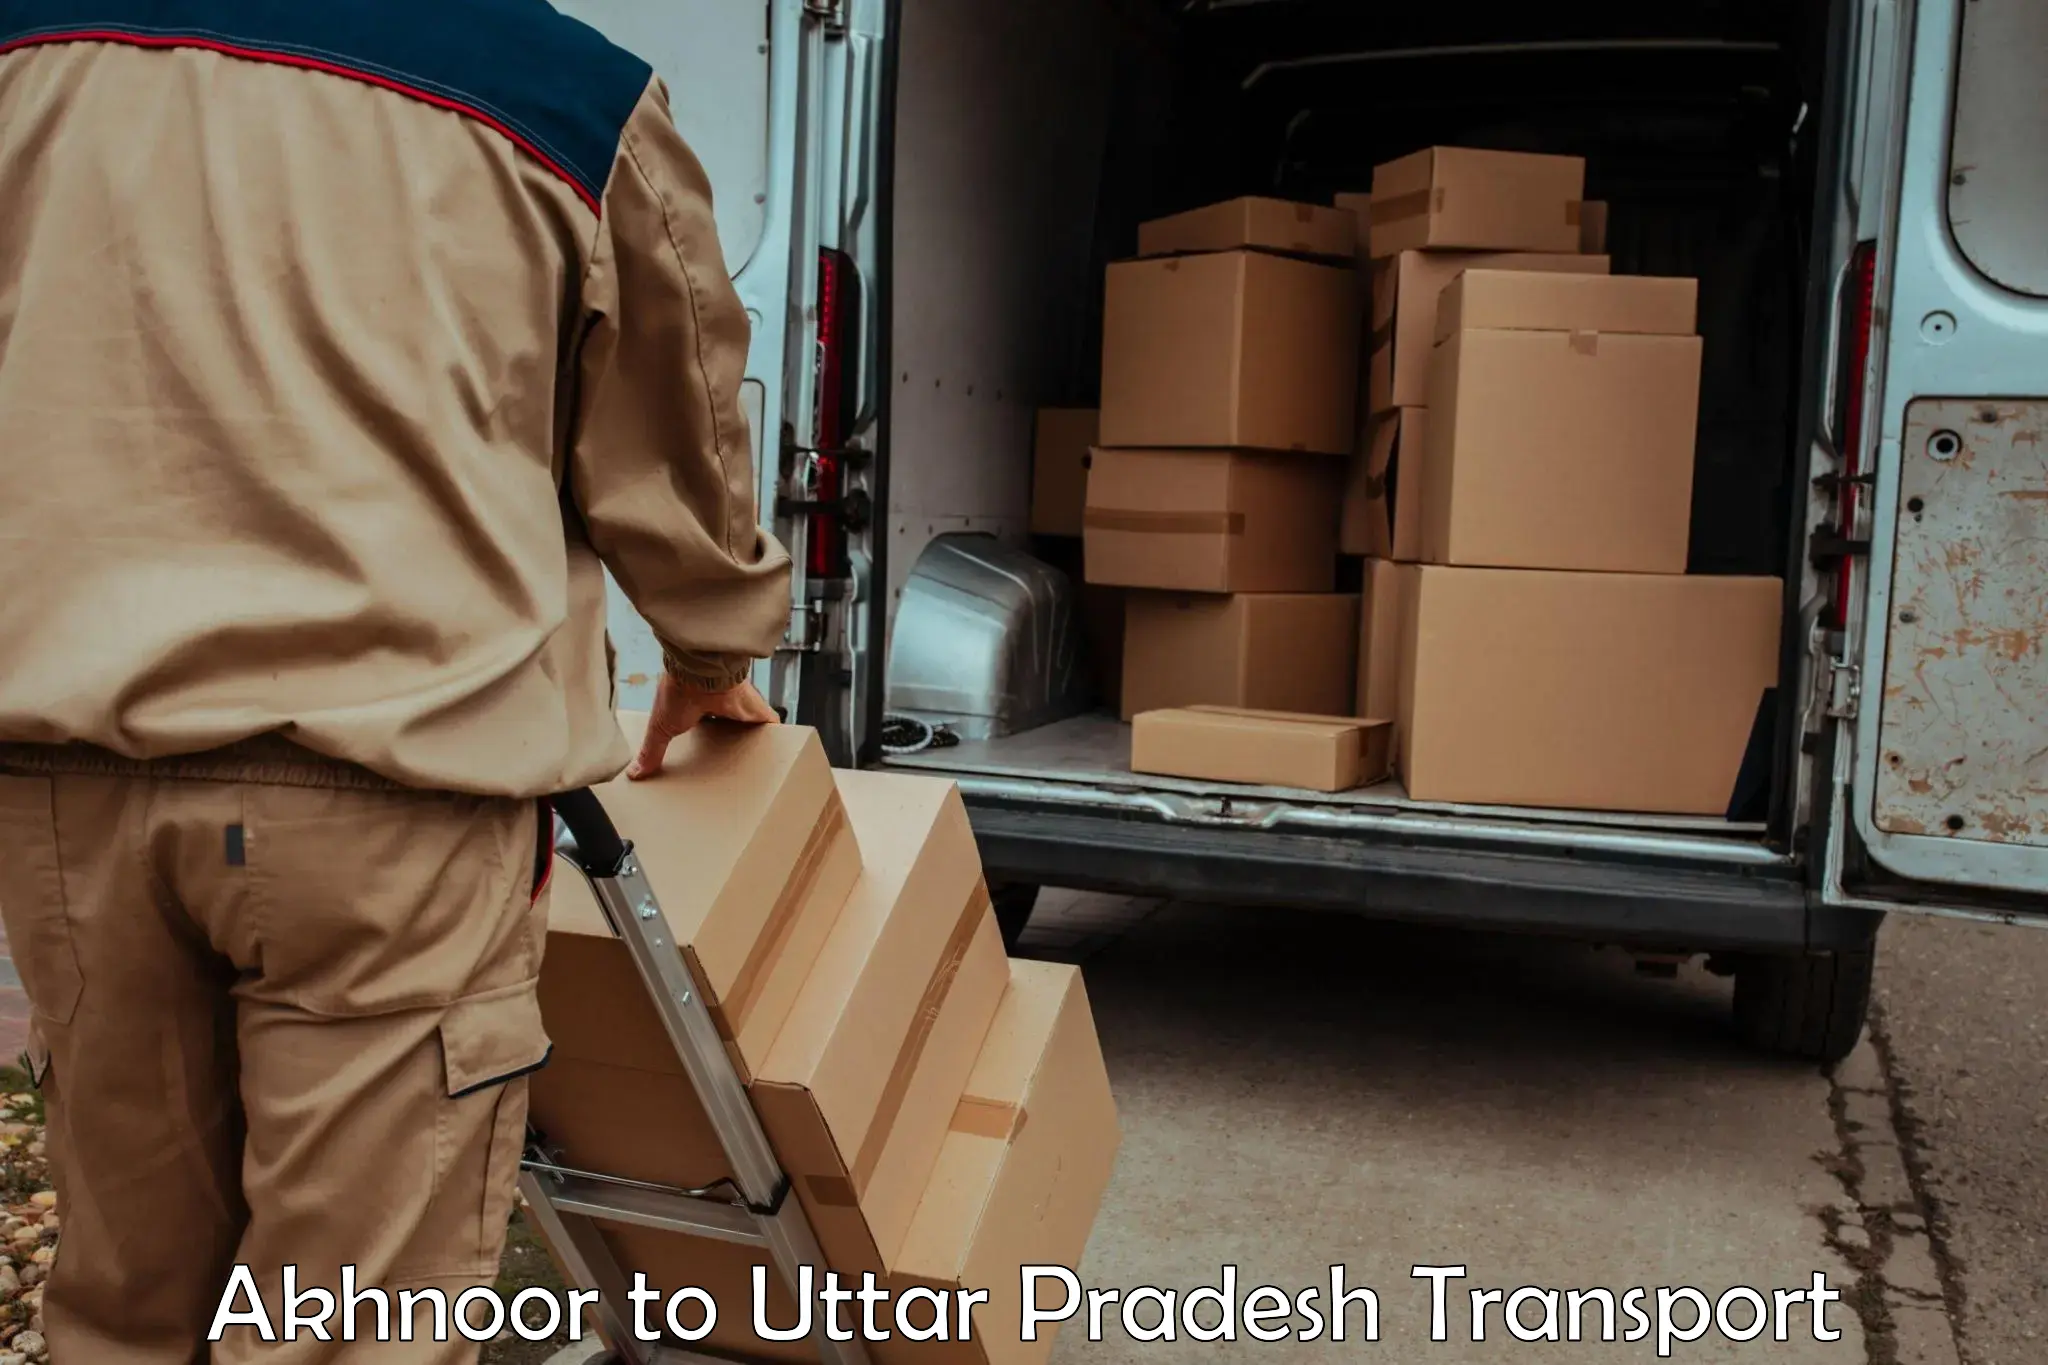 Truck transport companies in India Akhnoor to Gauriganj